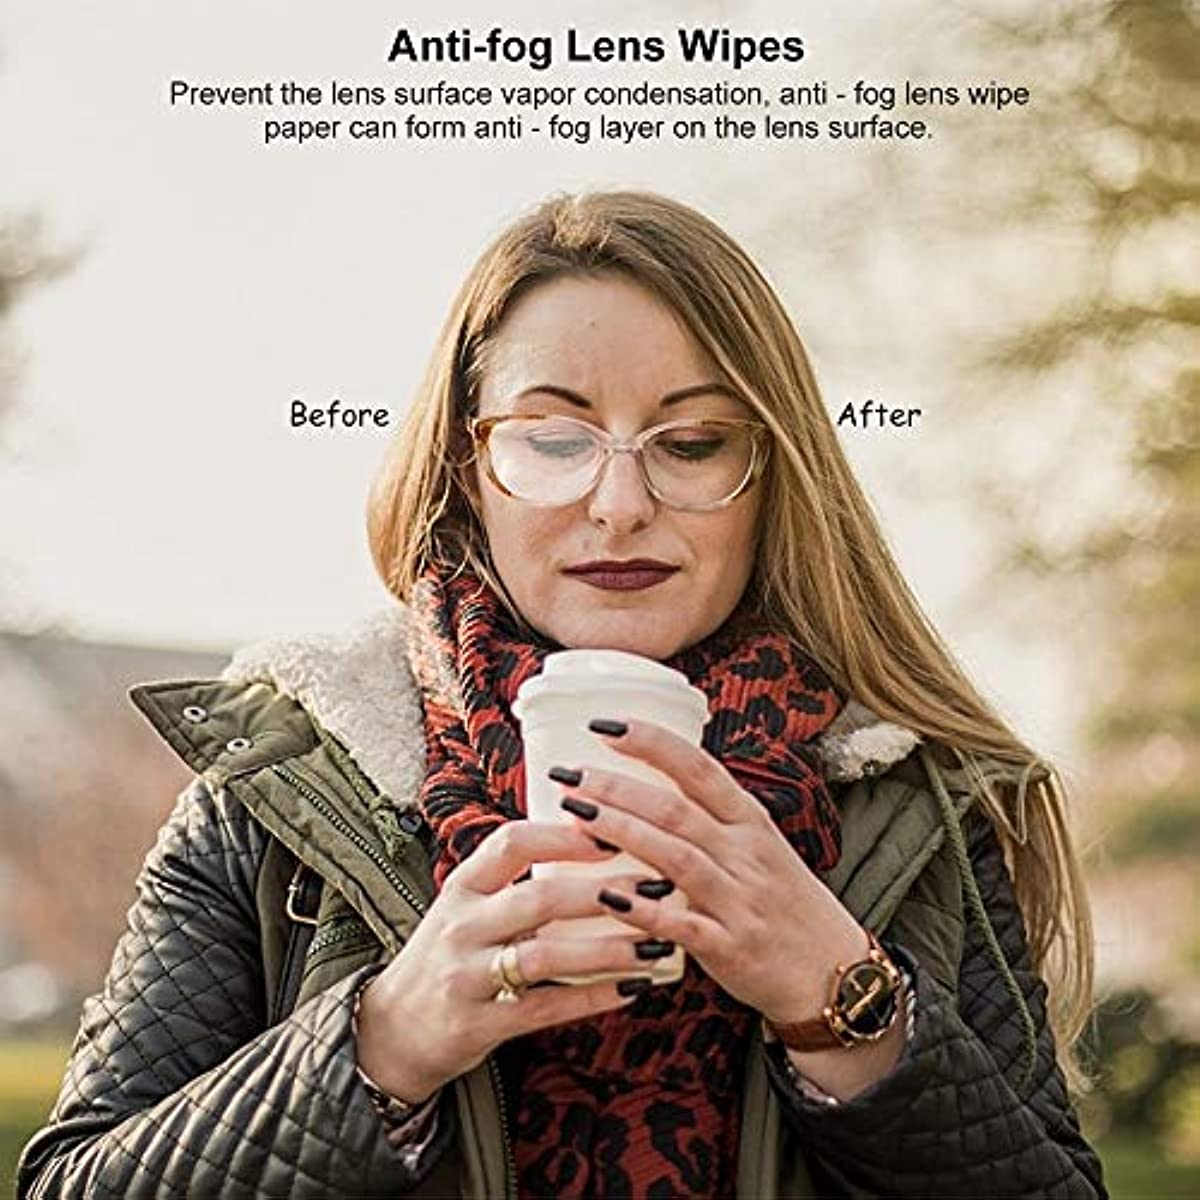 Alibeiss Anti-Fog Lens Wipes Pre-Moistened Anti-Fog Wipes,6\" X 5\",for Eye Glasses (60 Pack)